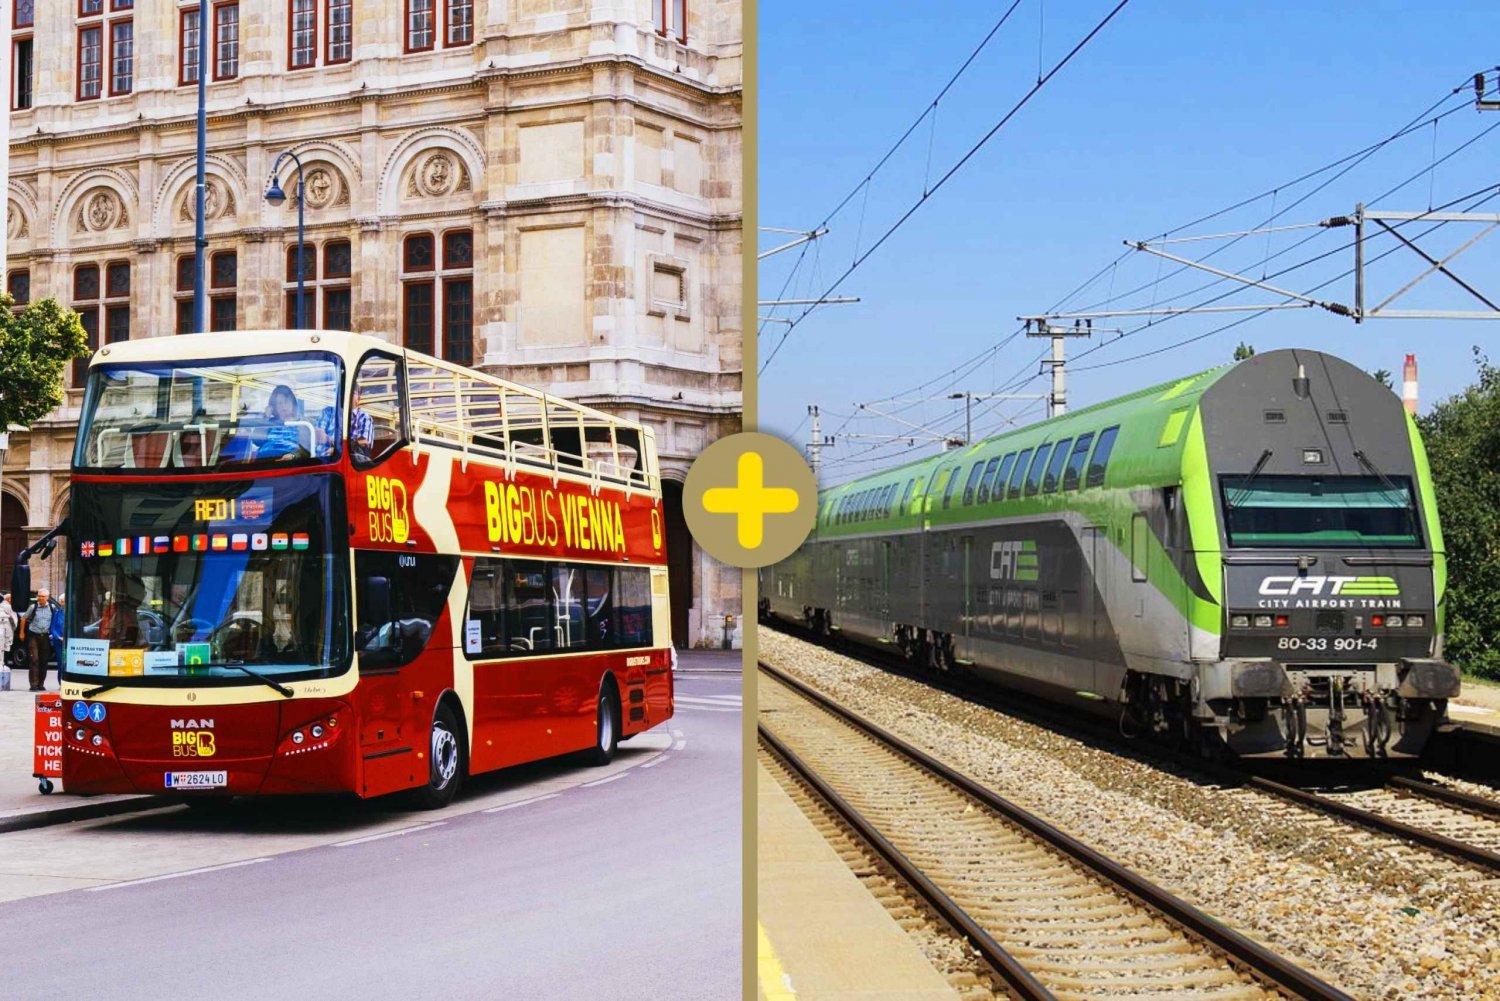 Vienne : 1 journée de visite en bus avec arrêt et train aéroportuaire